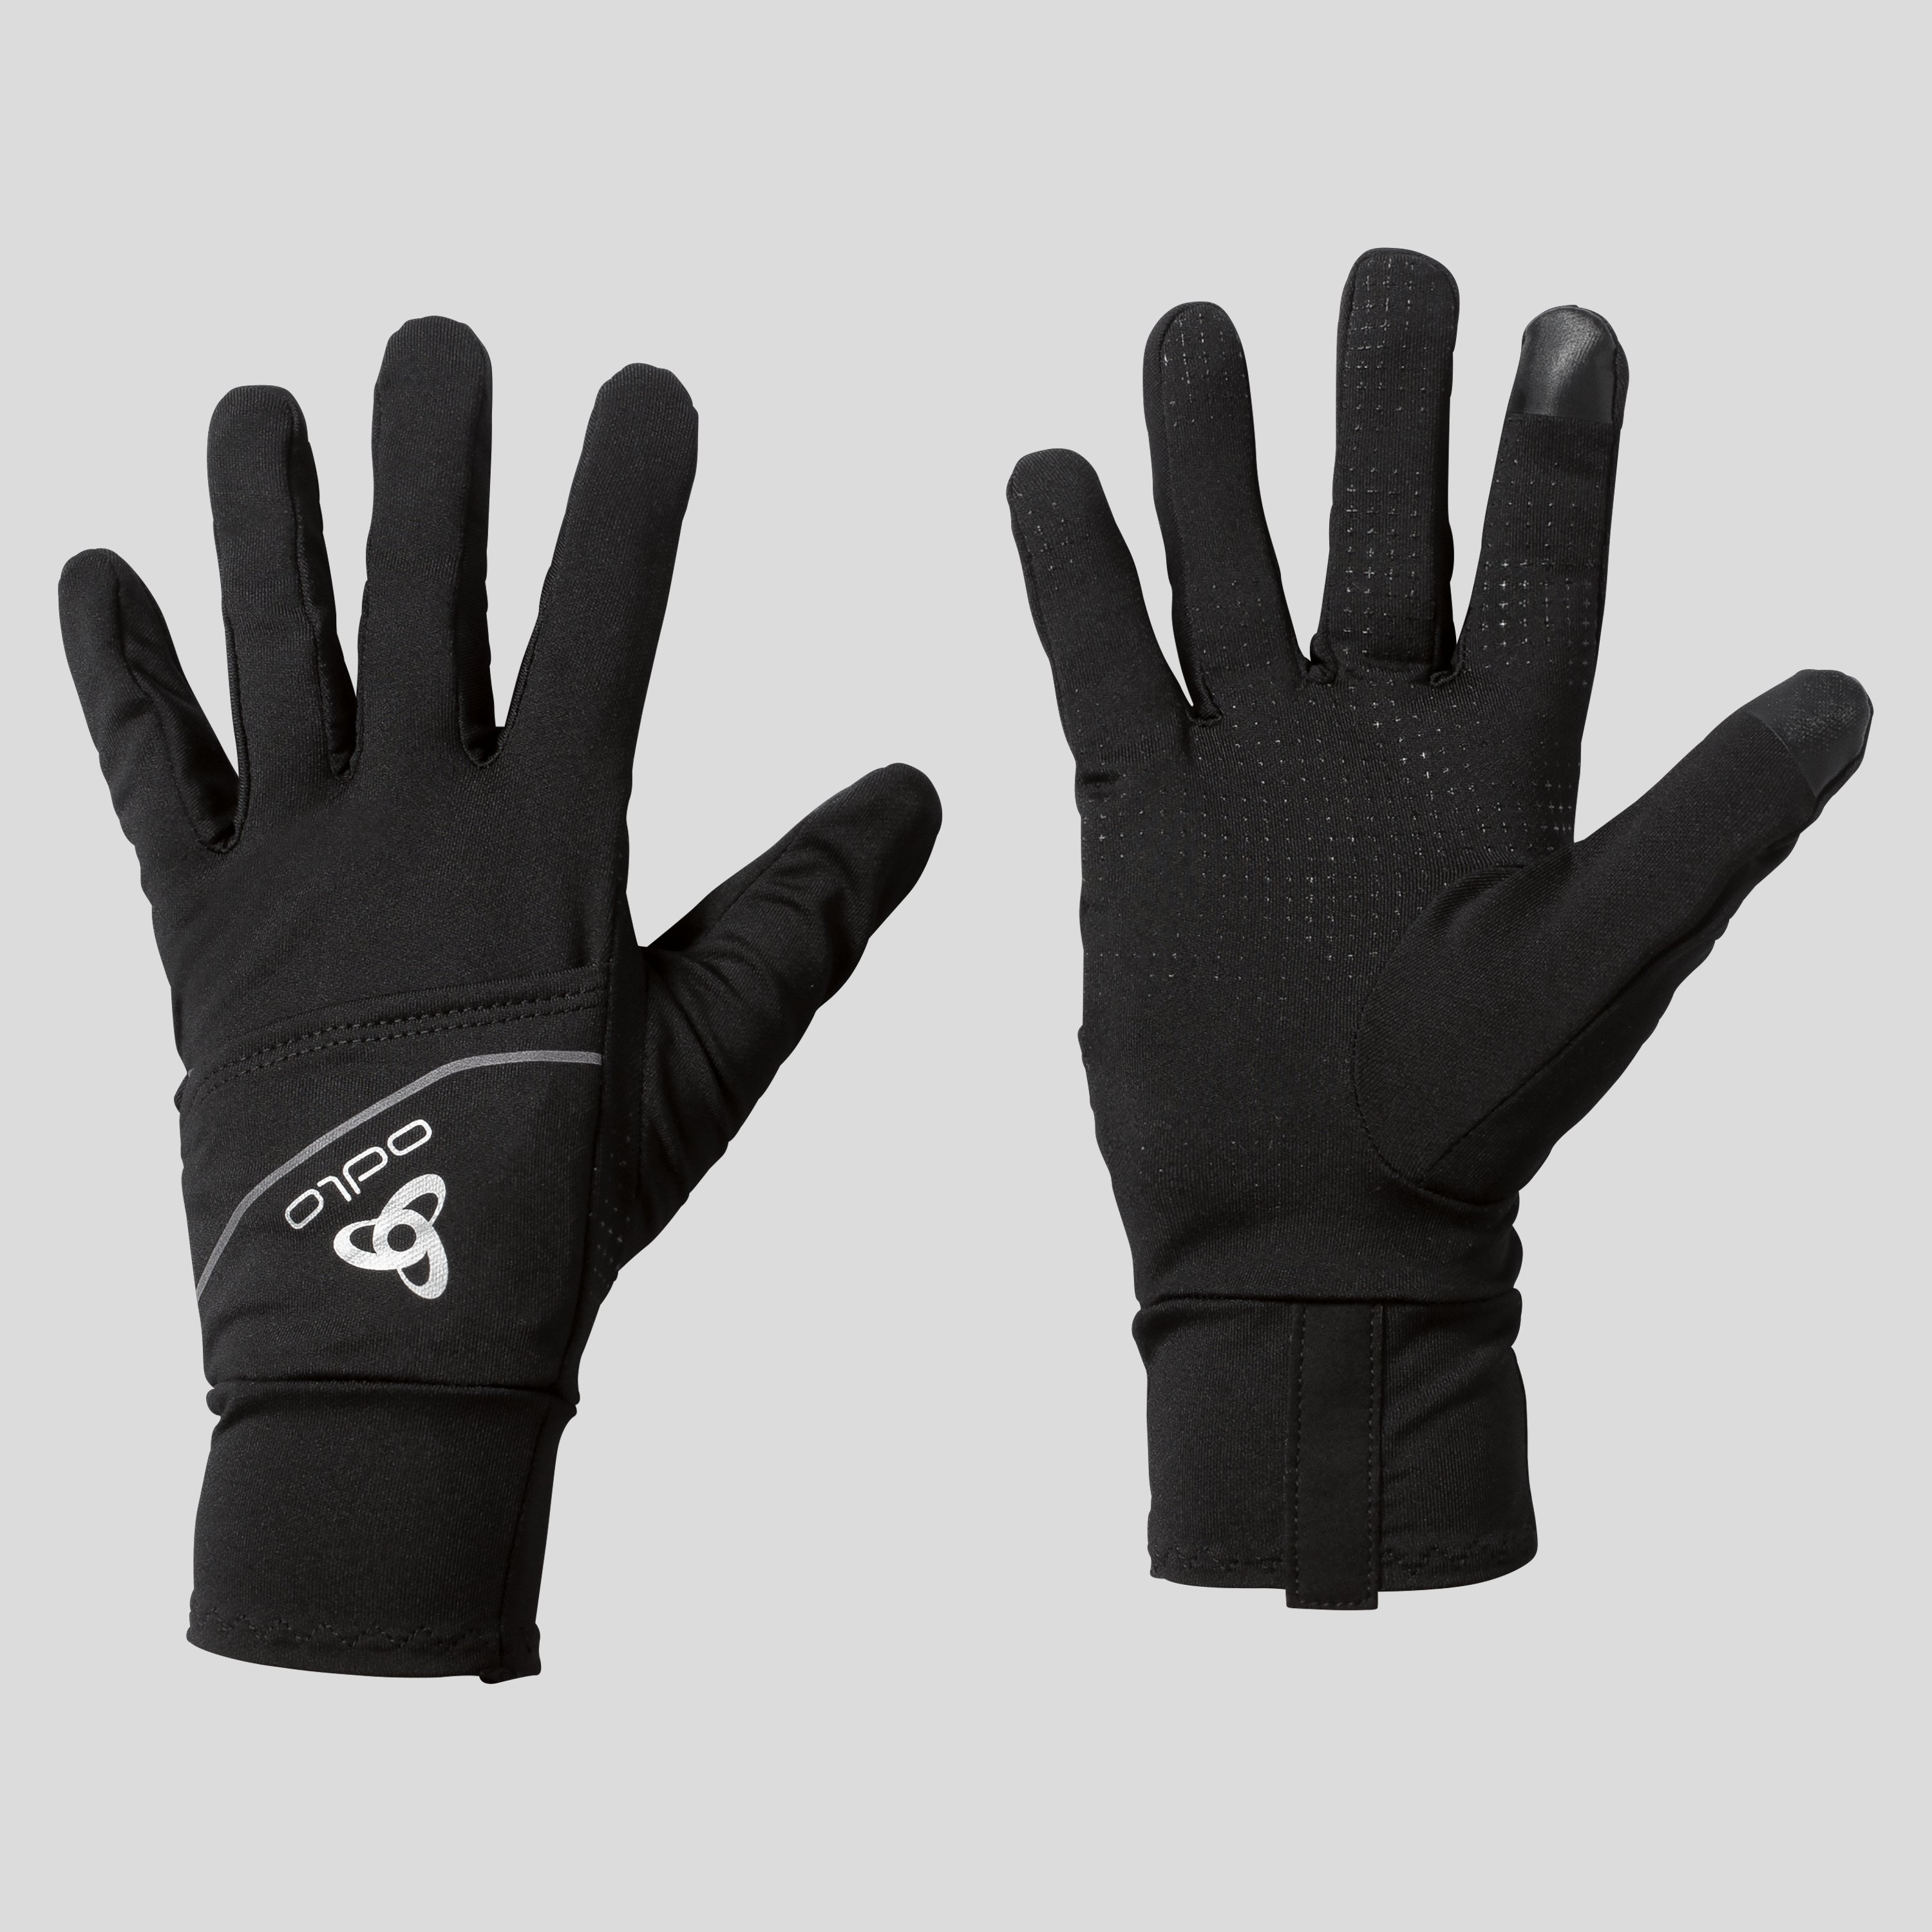 ODLO Intensity Cover Safety Light Handschuhe, L, schwarz